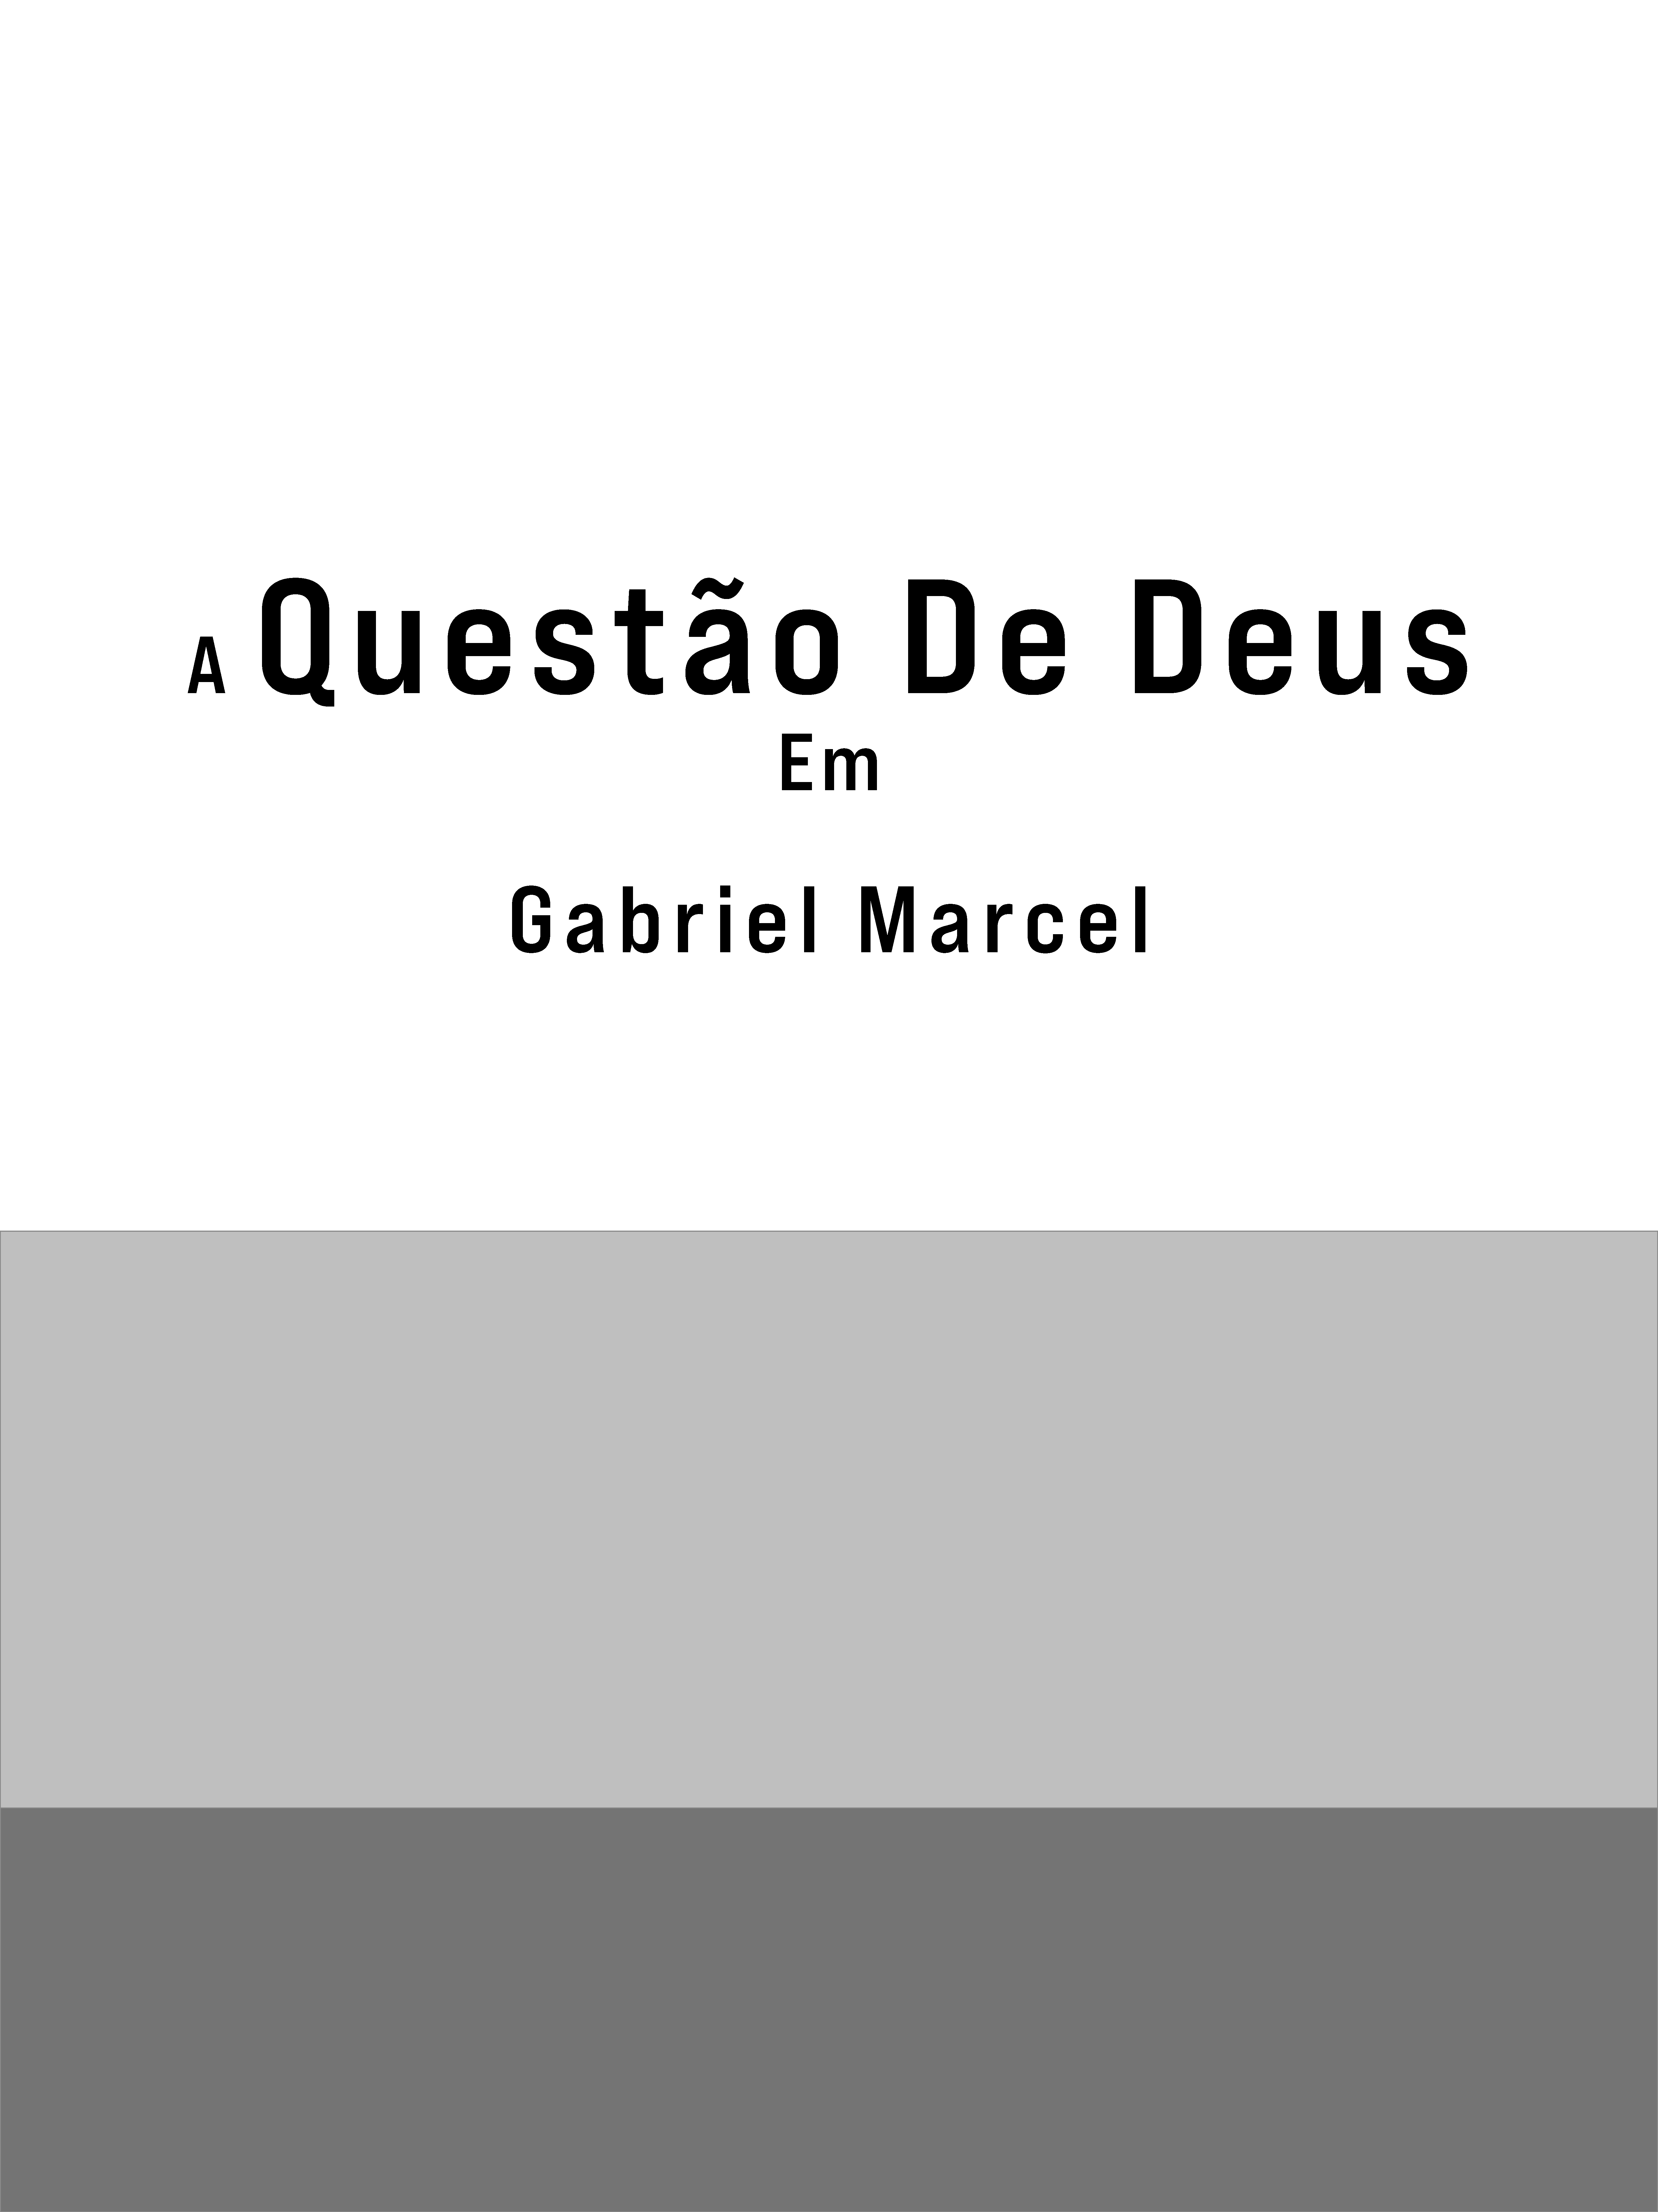 A questão de Deus em Gabriel MArcel